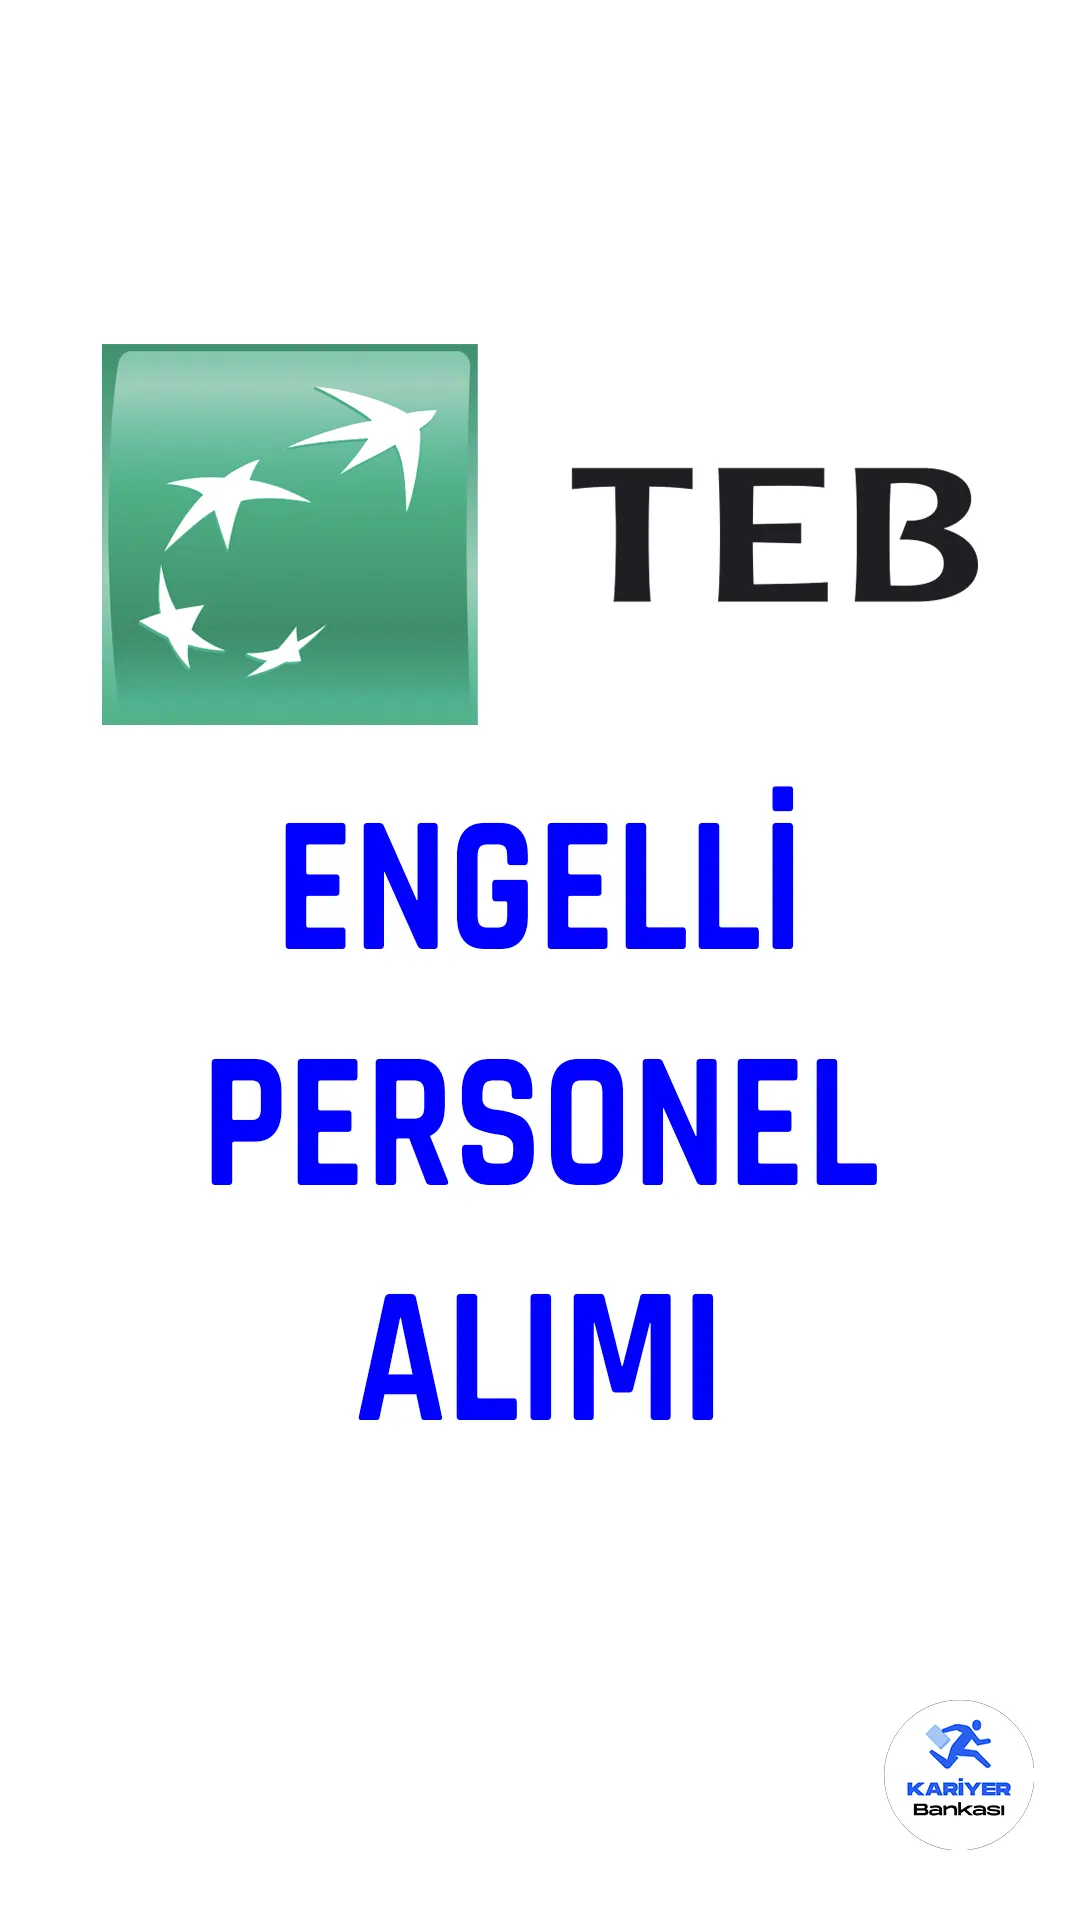 Türk Ekonomi Bankası (TEB) engelli personel alımı yapacak.